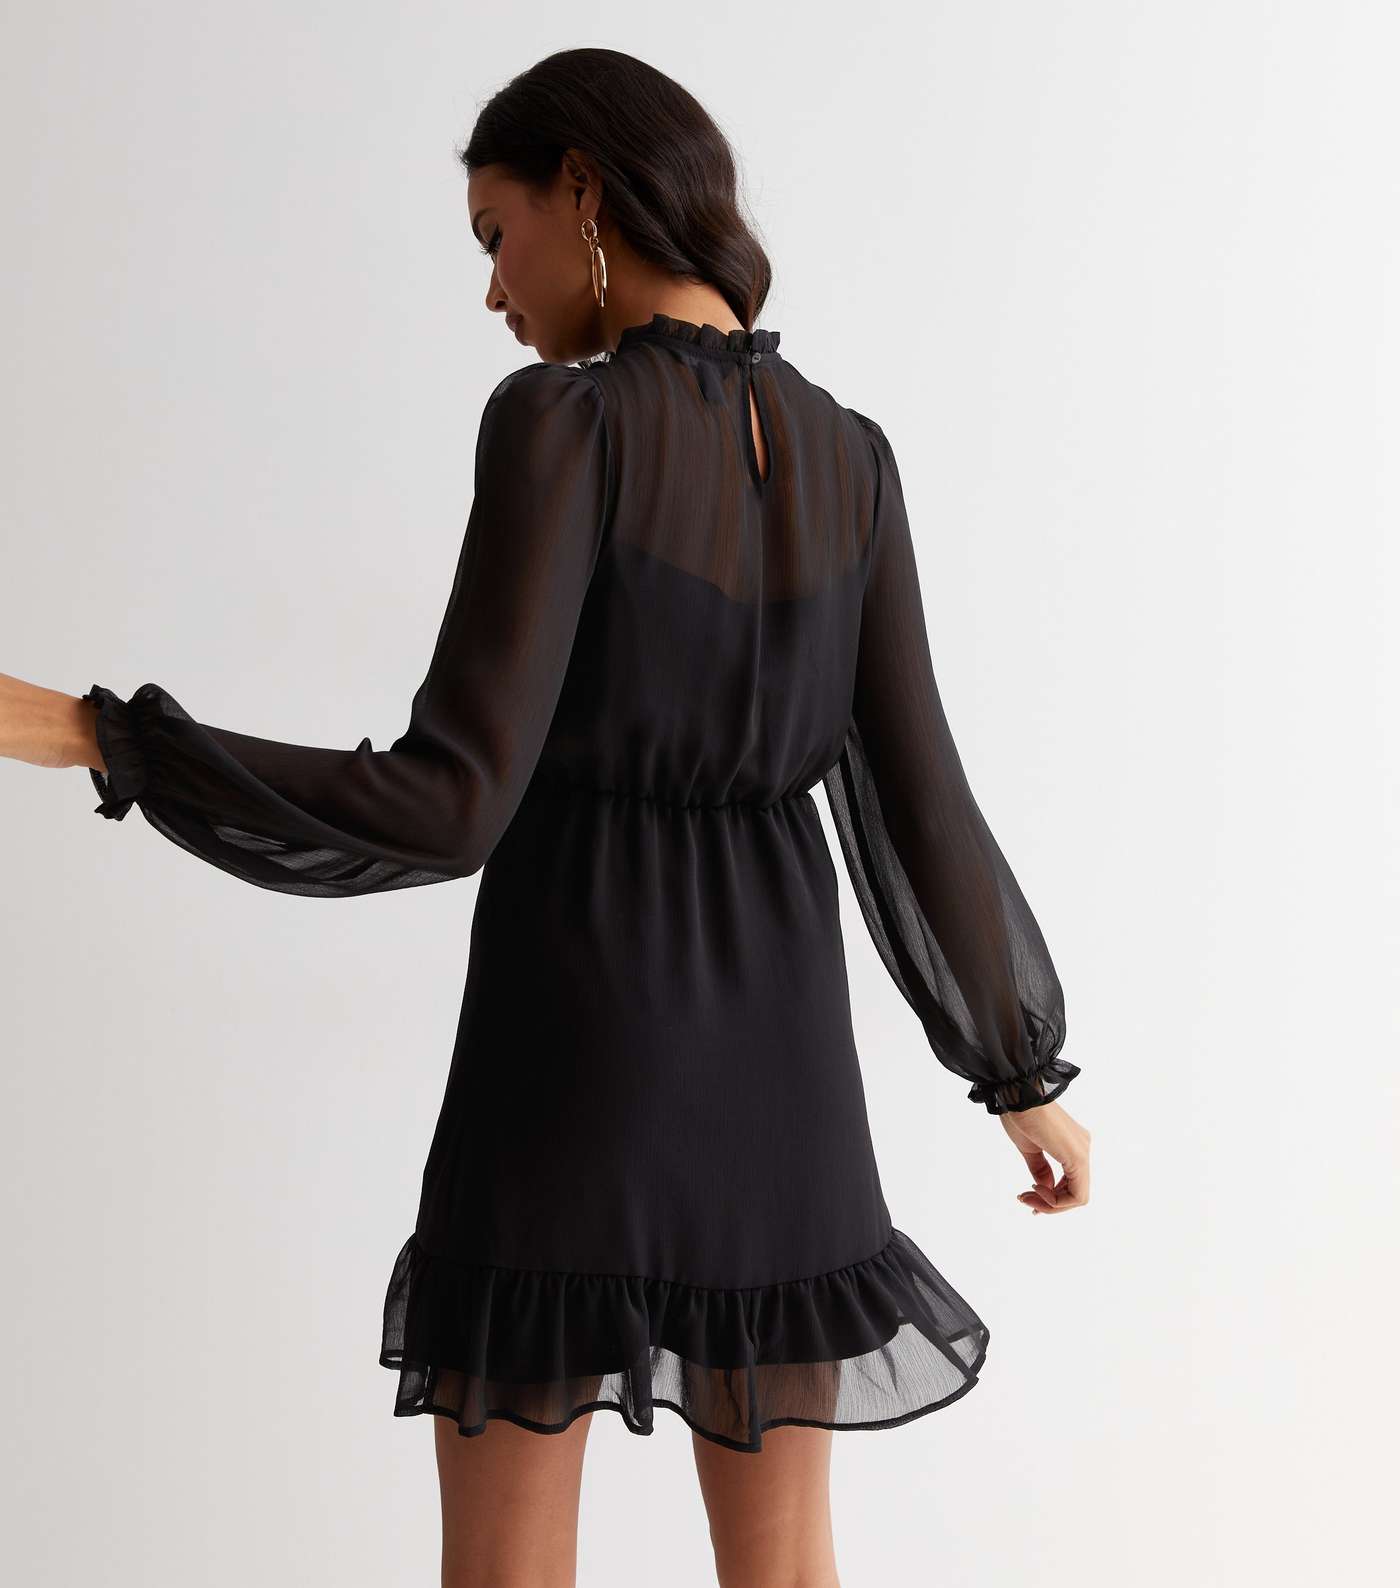 Black Chiffon High Neck Long Puff Sleeve Mini Dress Image 4